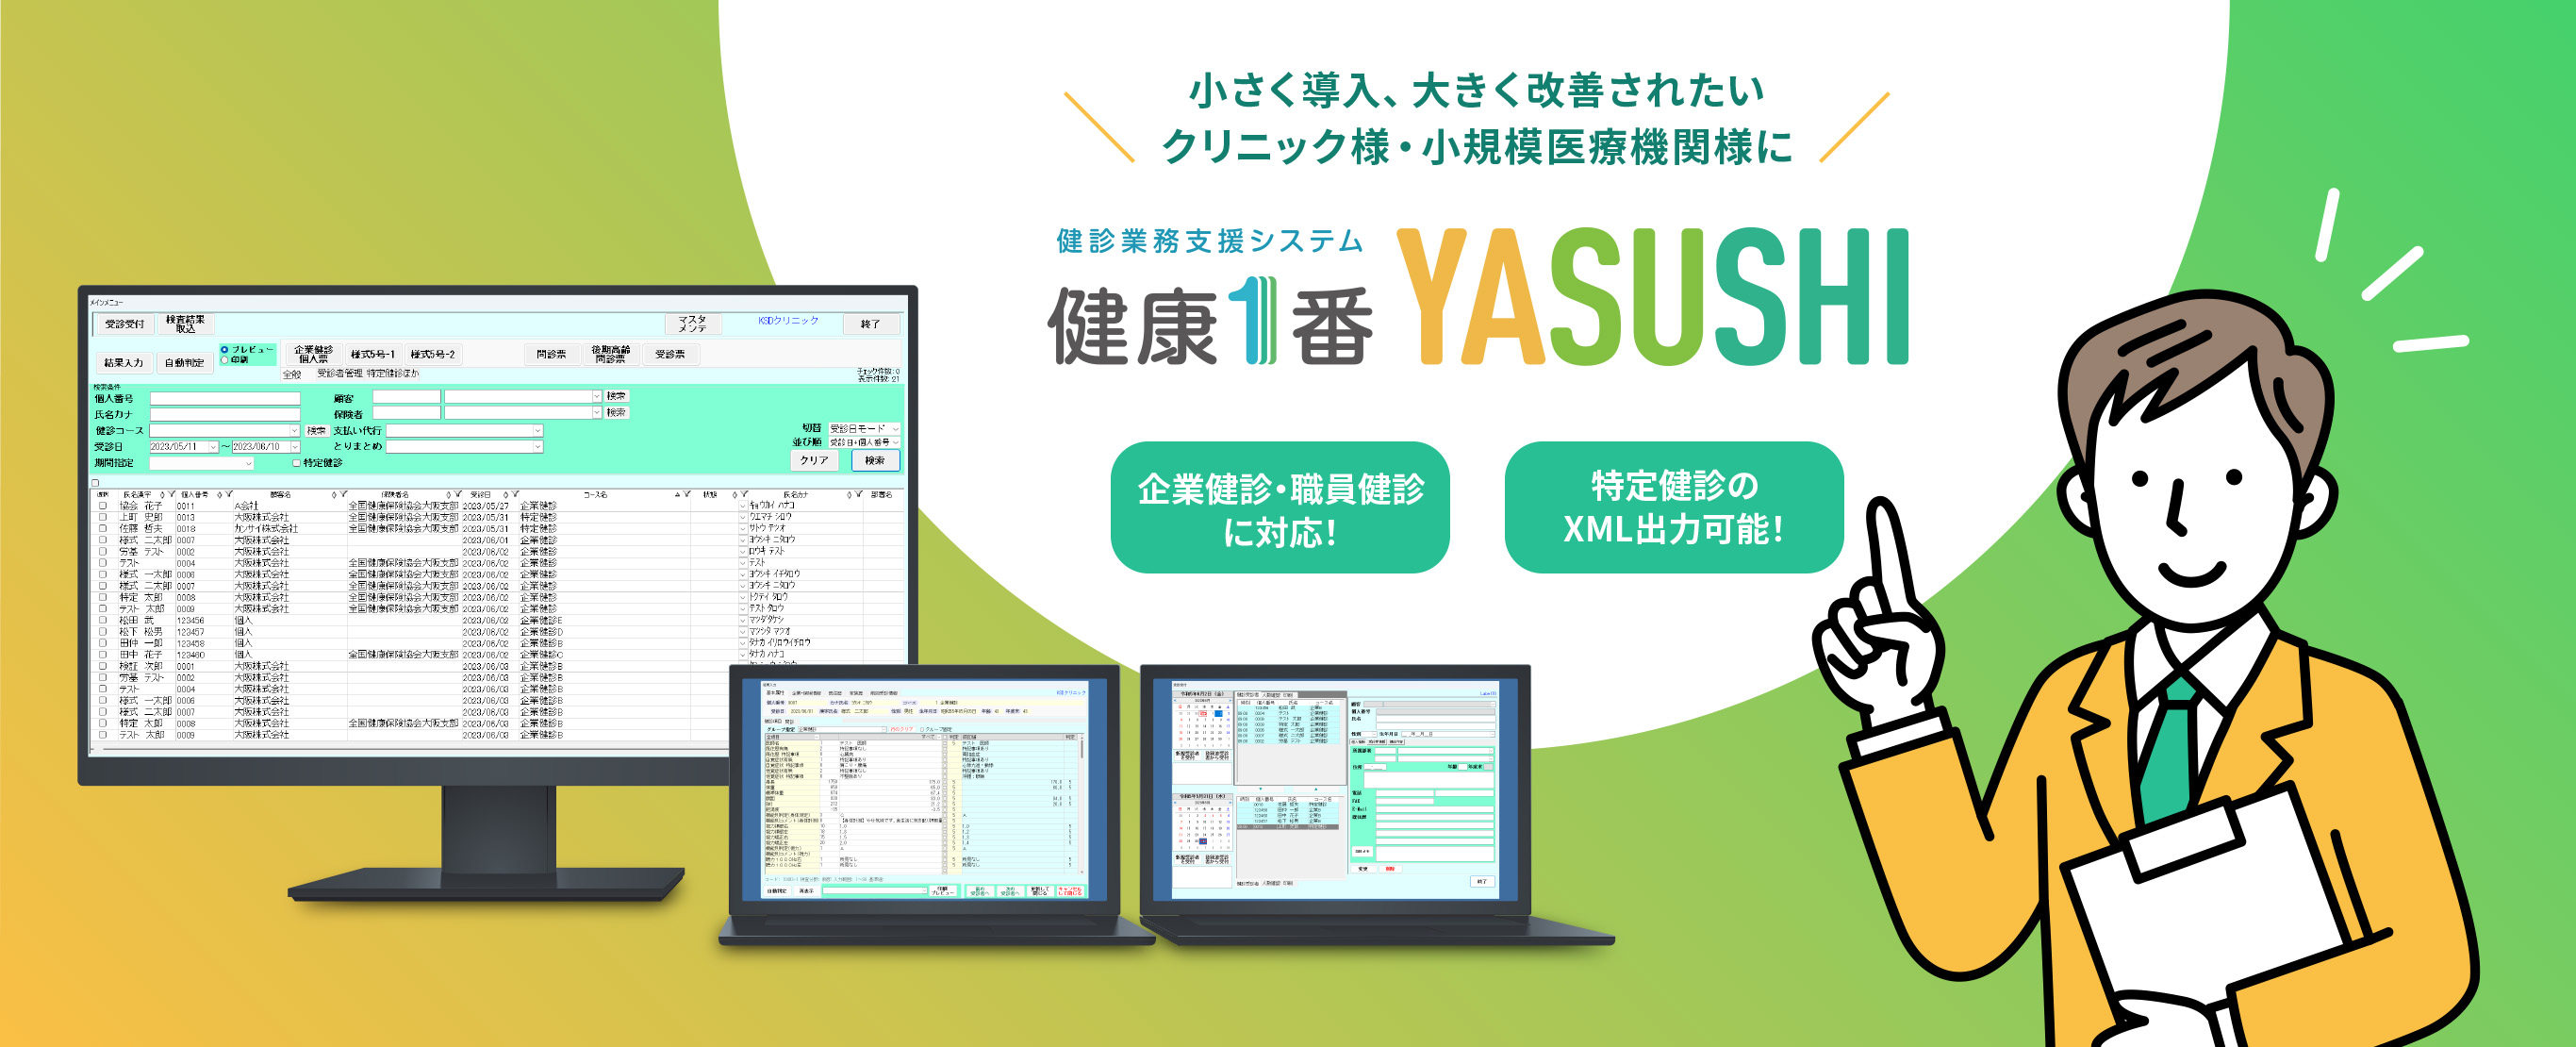 健診業務支援システム 健康1番 YASUSHI | 小さく導入、大きく改善されたいクリニック様・小規模医療機関様に